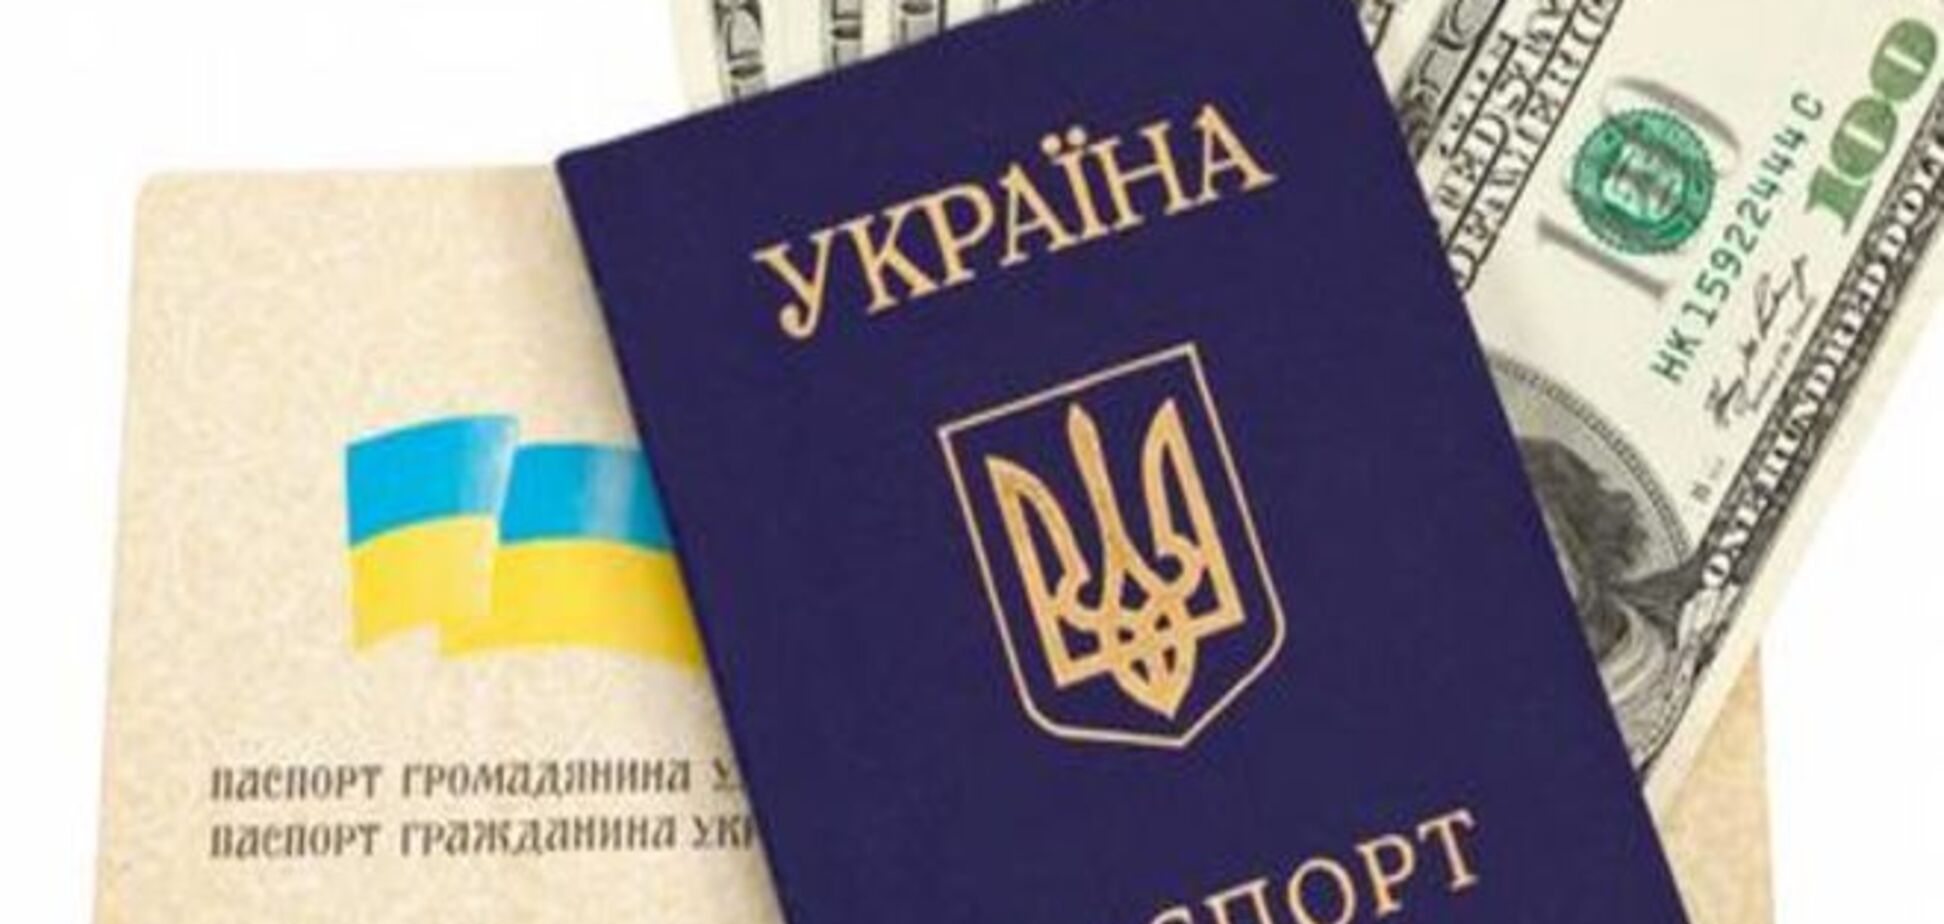 Как подтвердить рождение и женитьбу в ДНР украинскими документами?